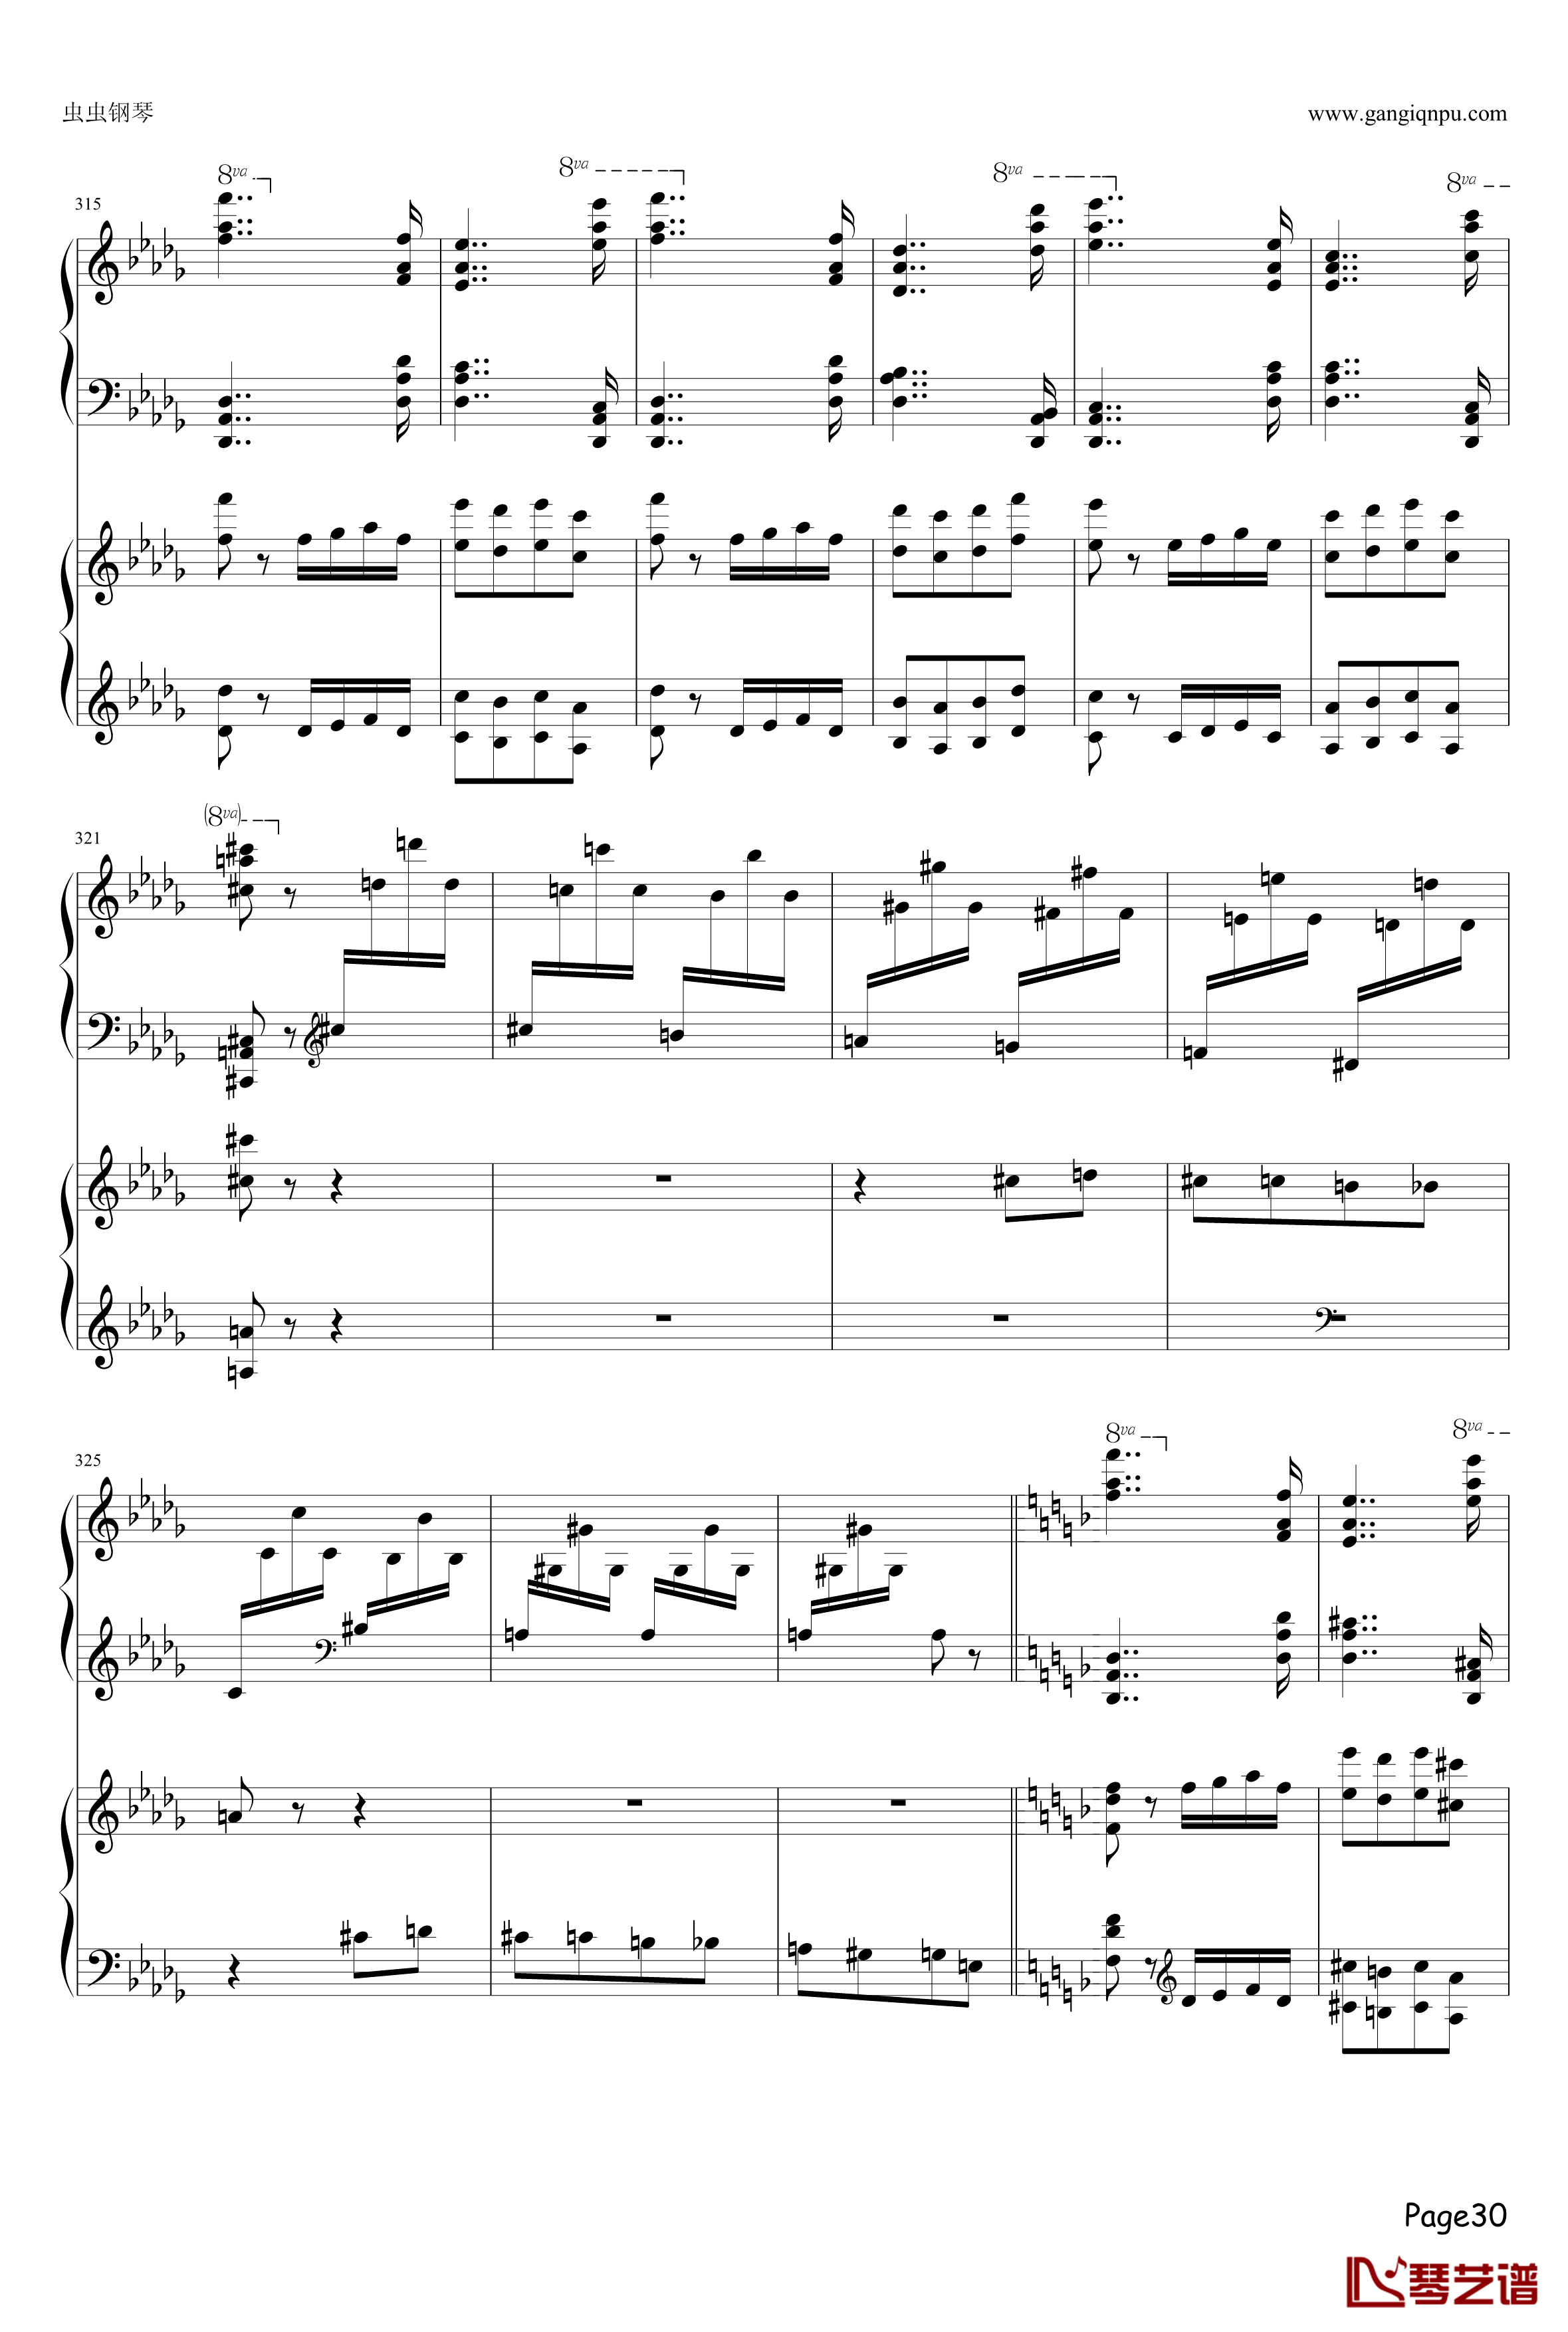 幻之舞钢琴谱-李斯特30